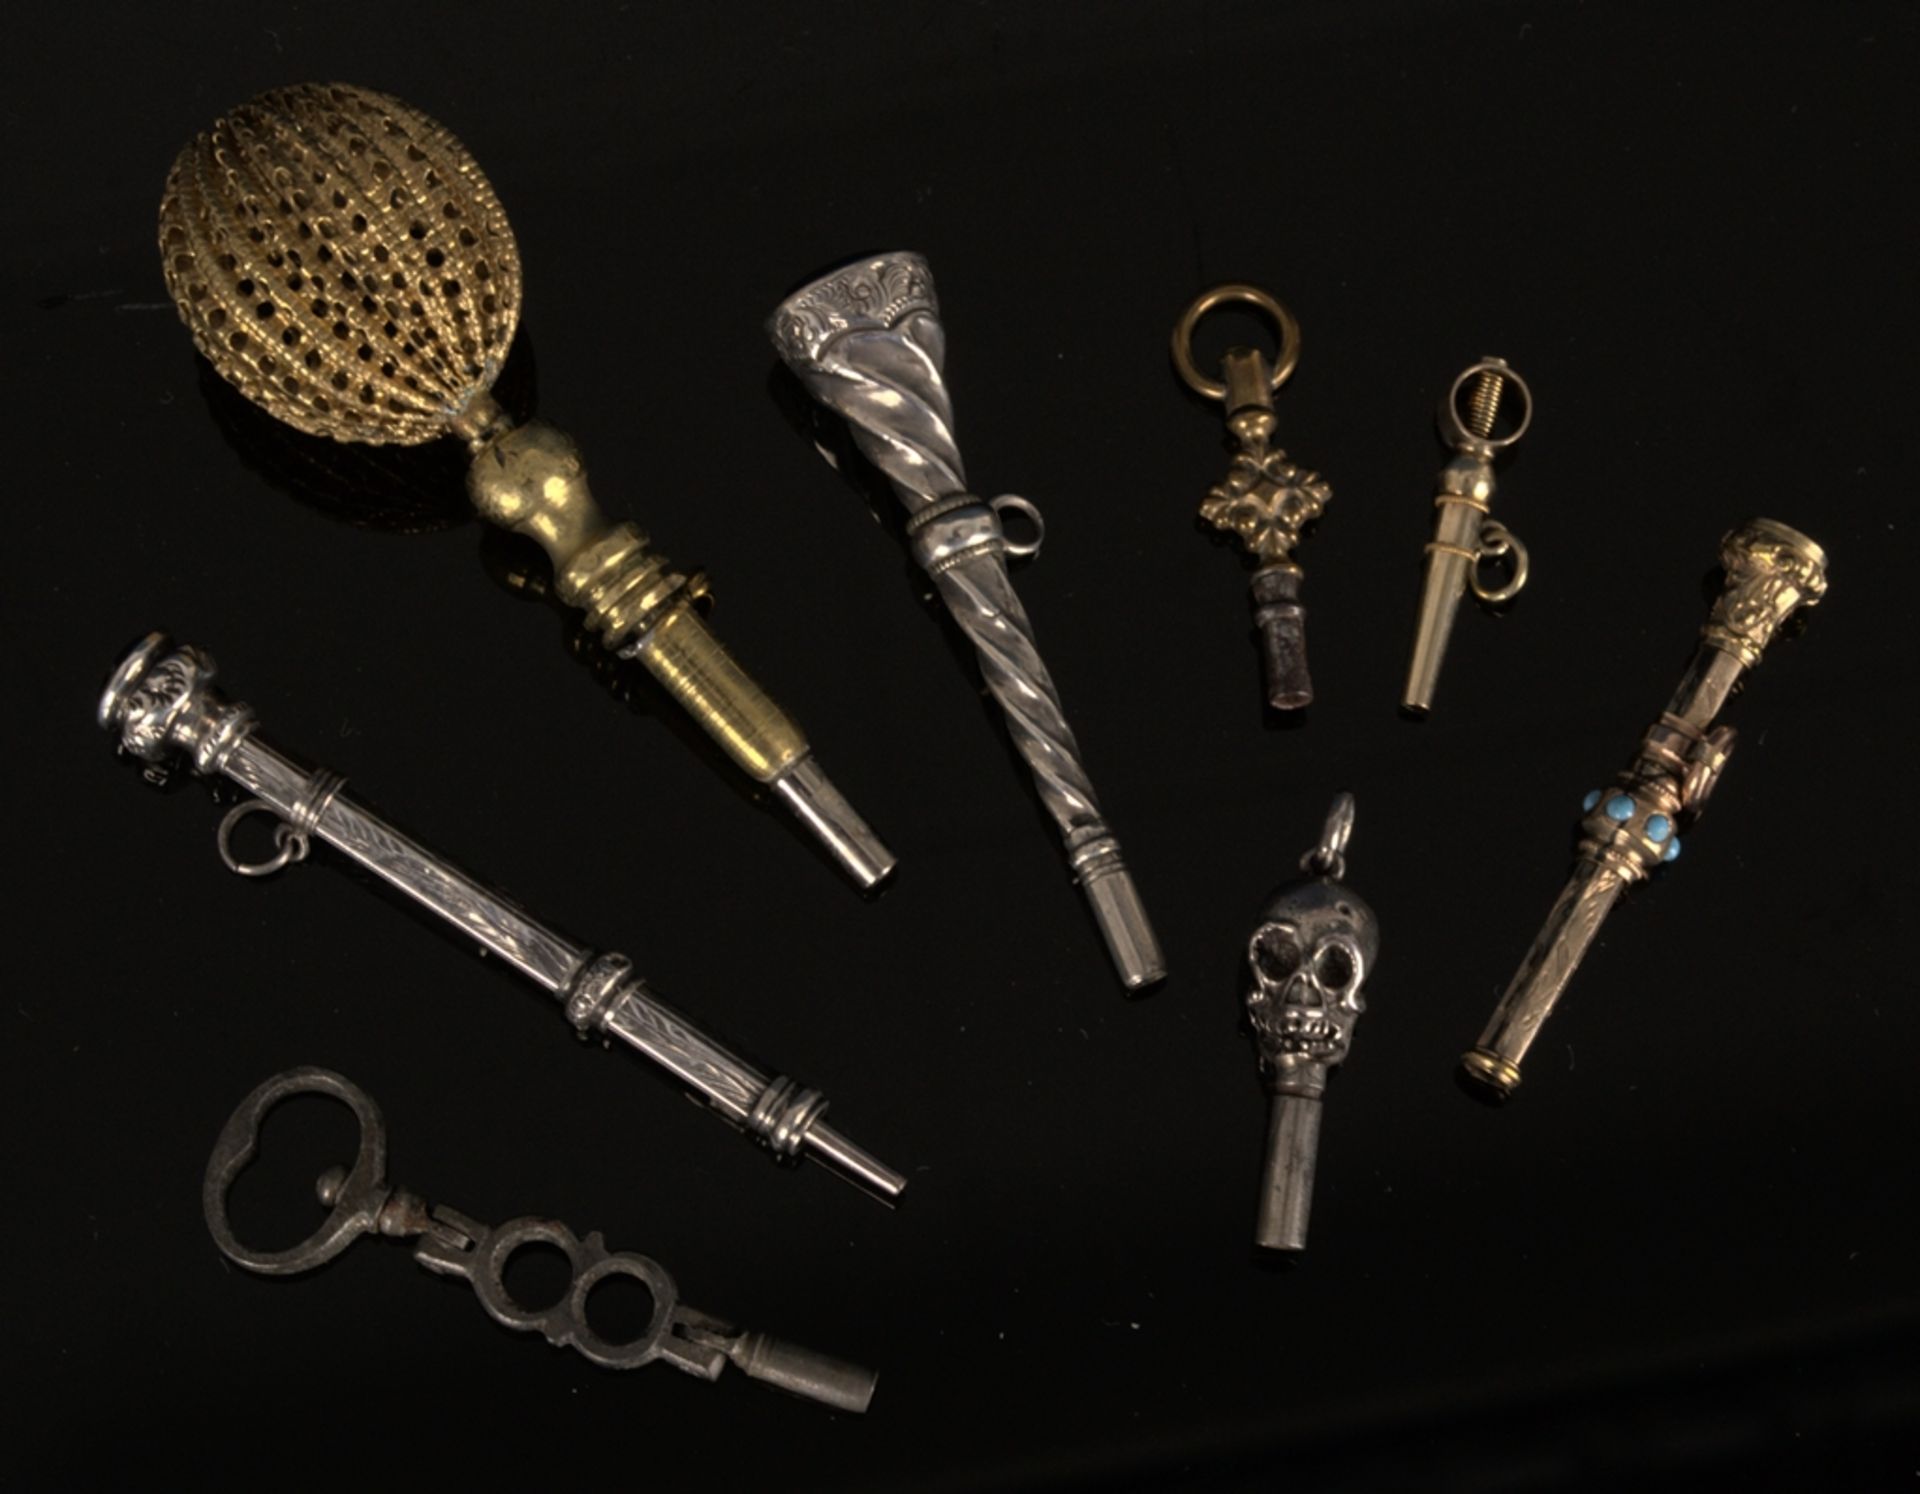 8teilige Sammlung versch. Taschenuhrenschlüssel, überwiegend 19. Jhd. Versch. Alter, Größen, - Image 2 of 24